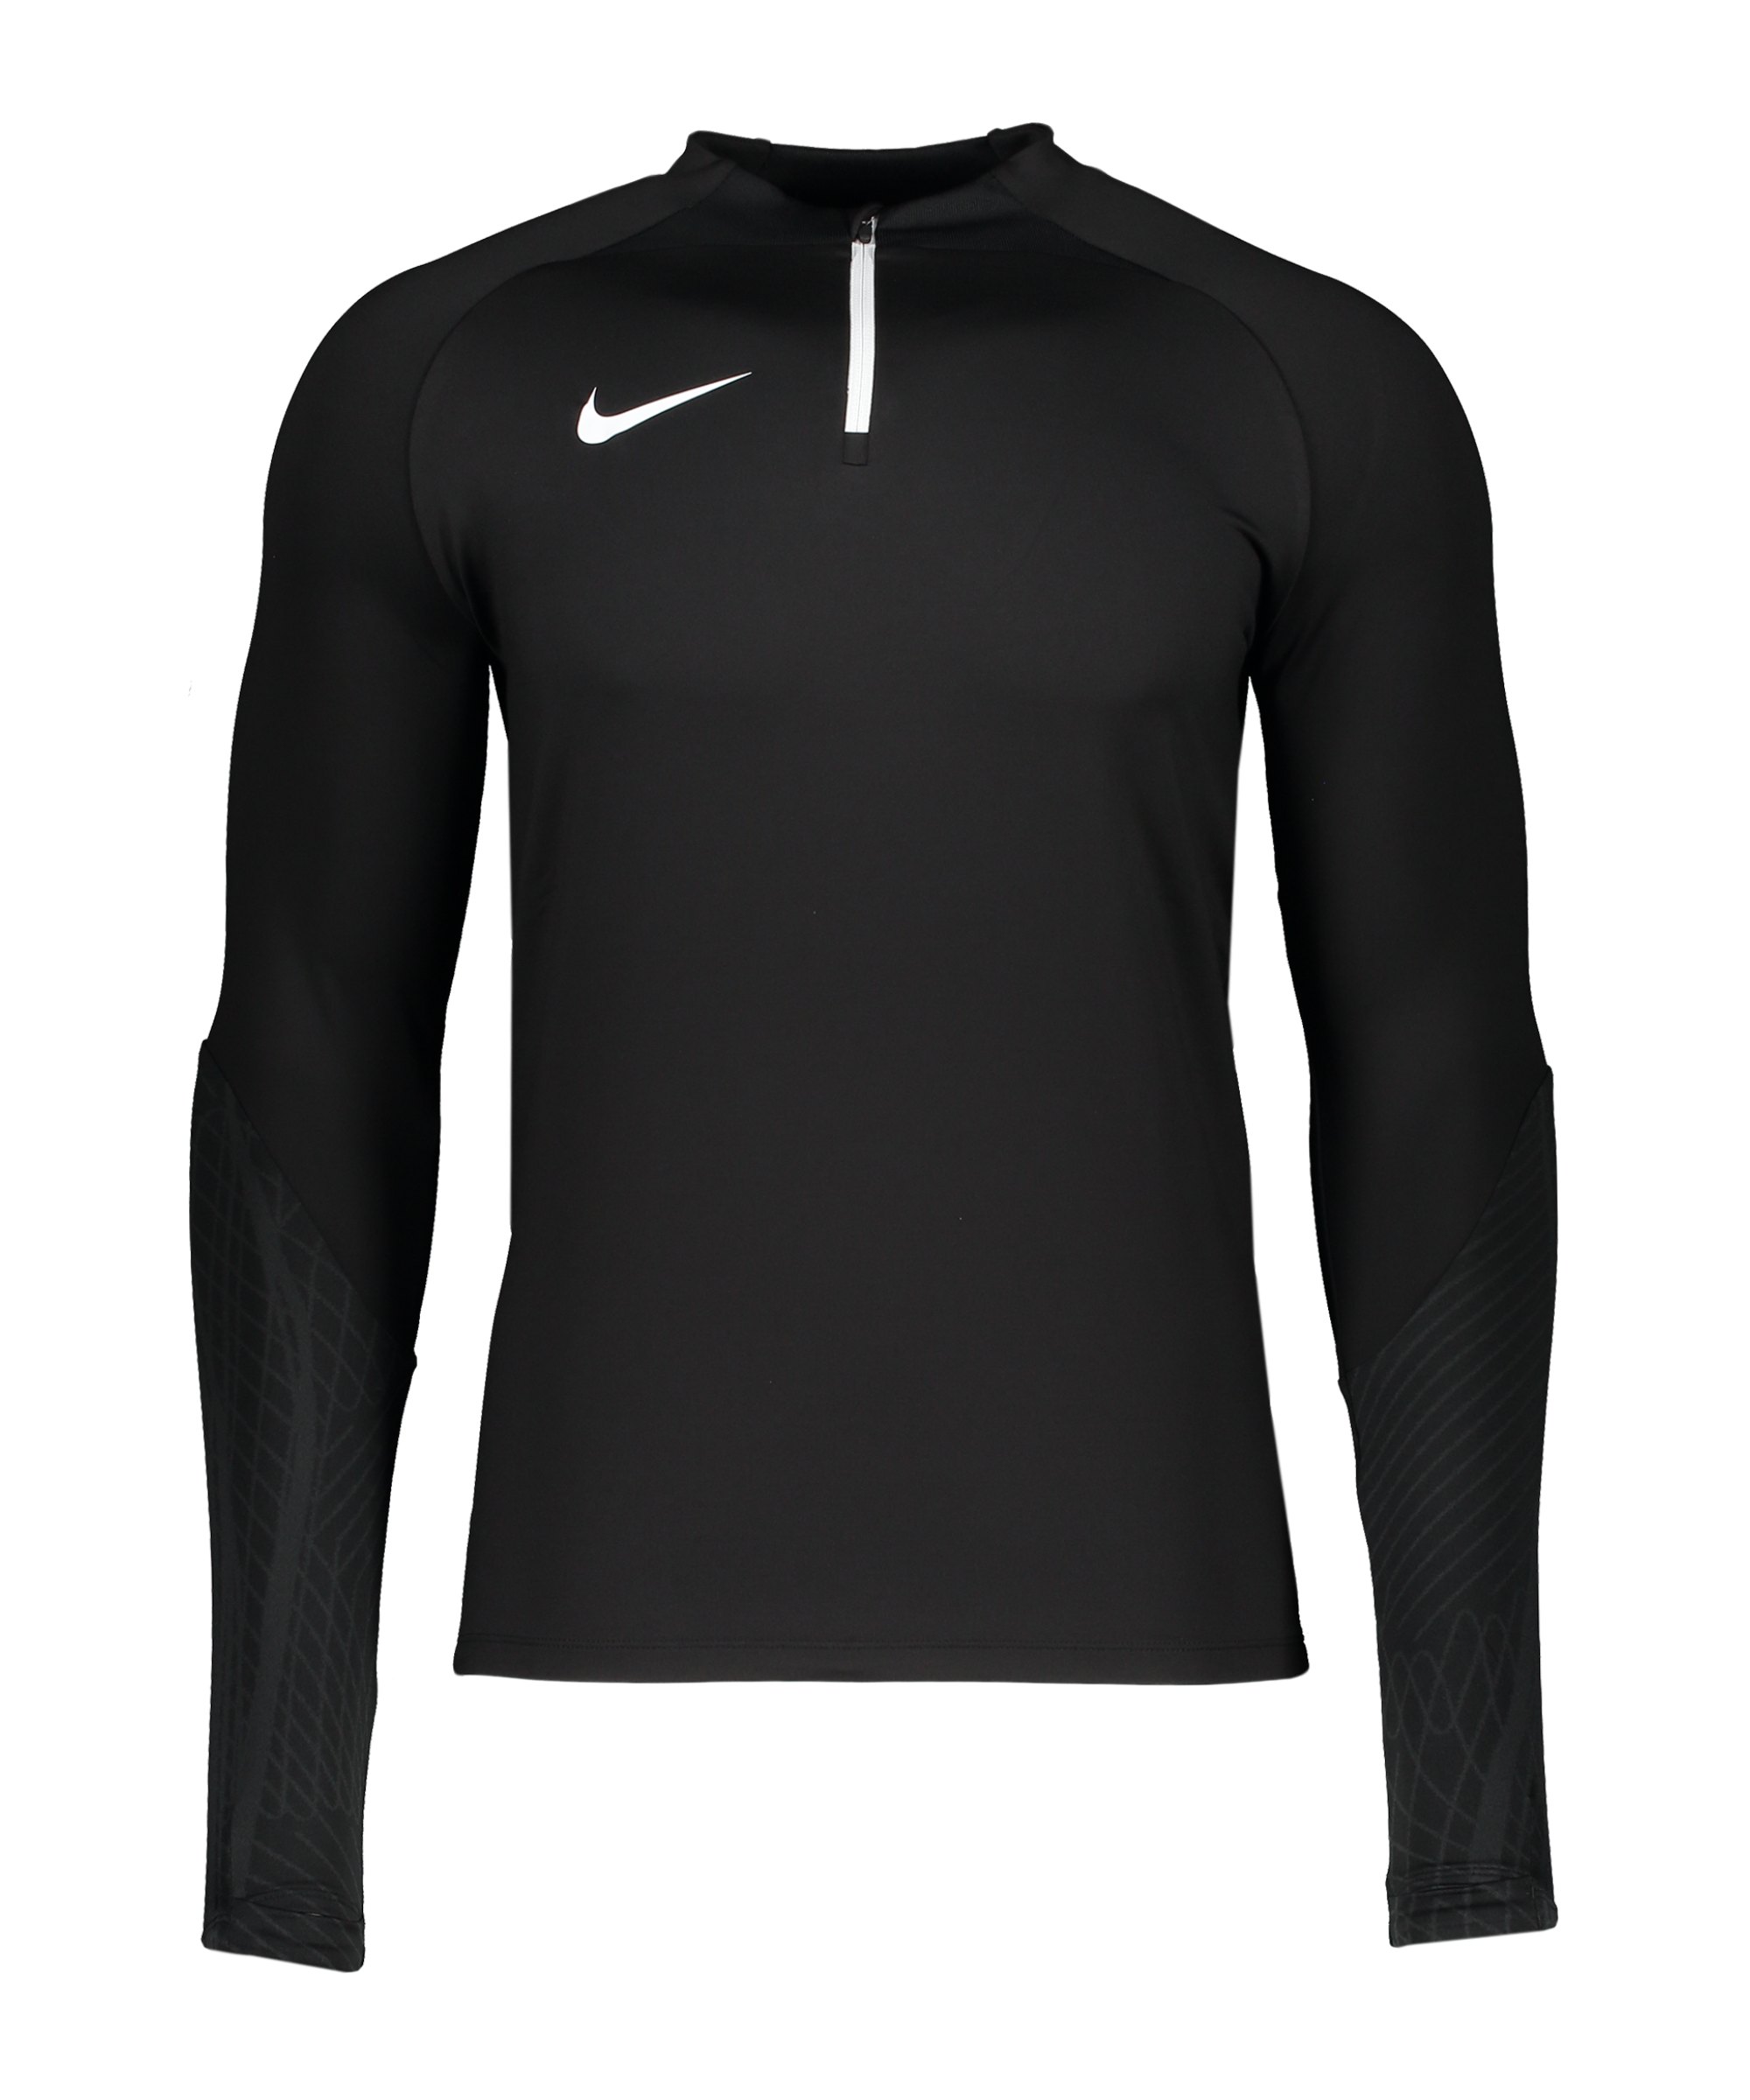 Nike Strike Drill Top Schwarz F010 - schwarz